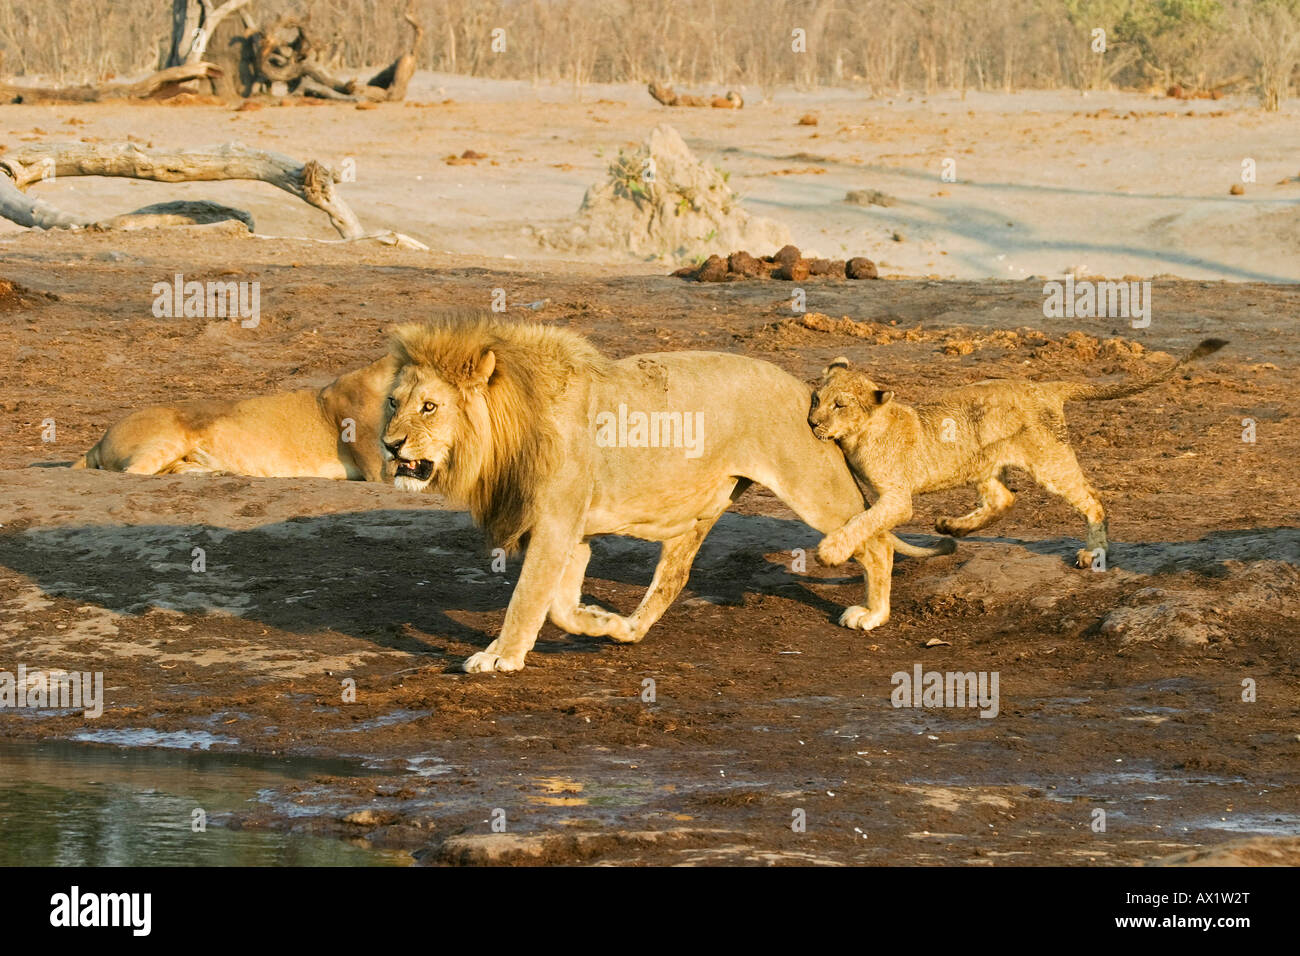 Male lion (Panthera leo) with playing cup, Savuti, Chobe Nationalpark, Botswana, Africa Stock Photo